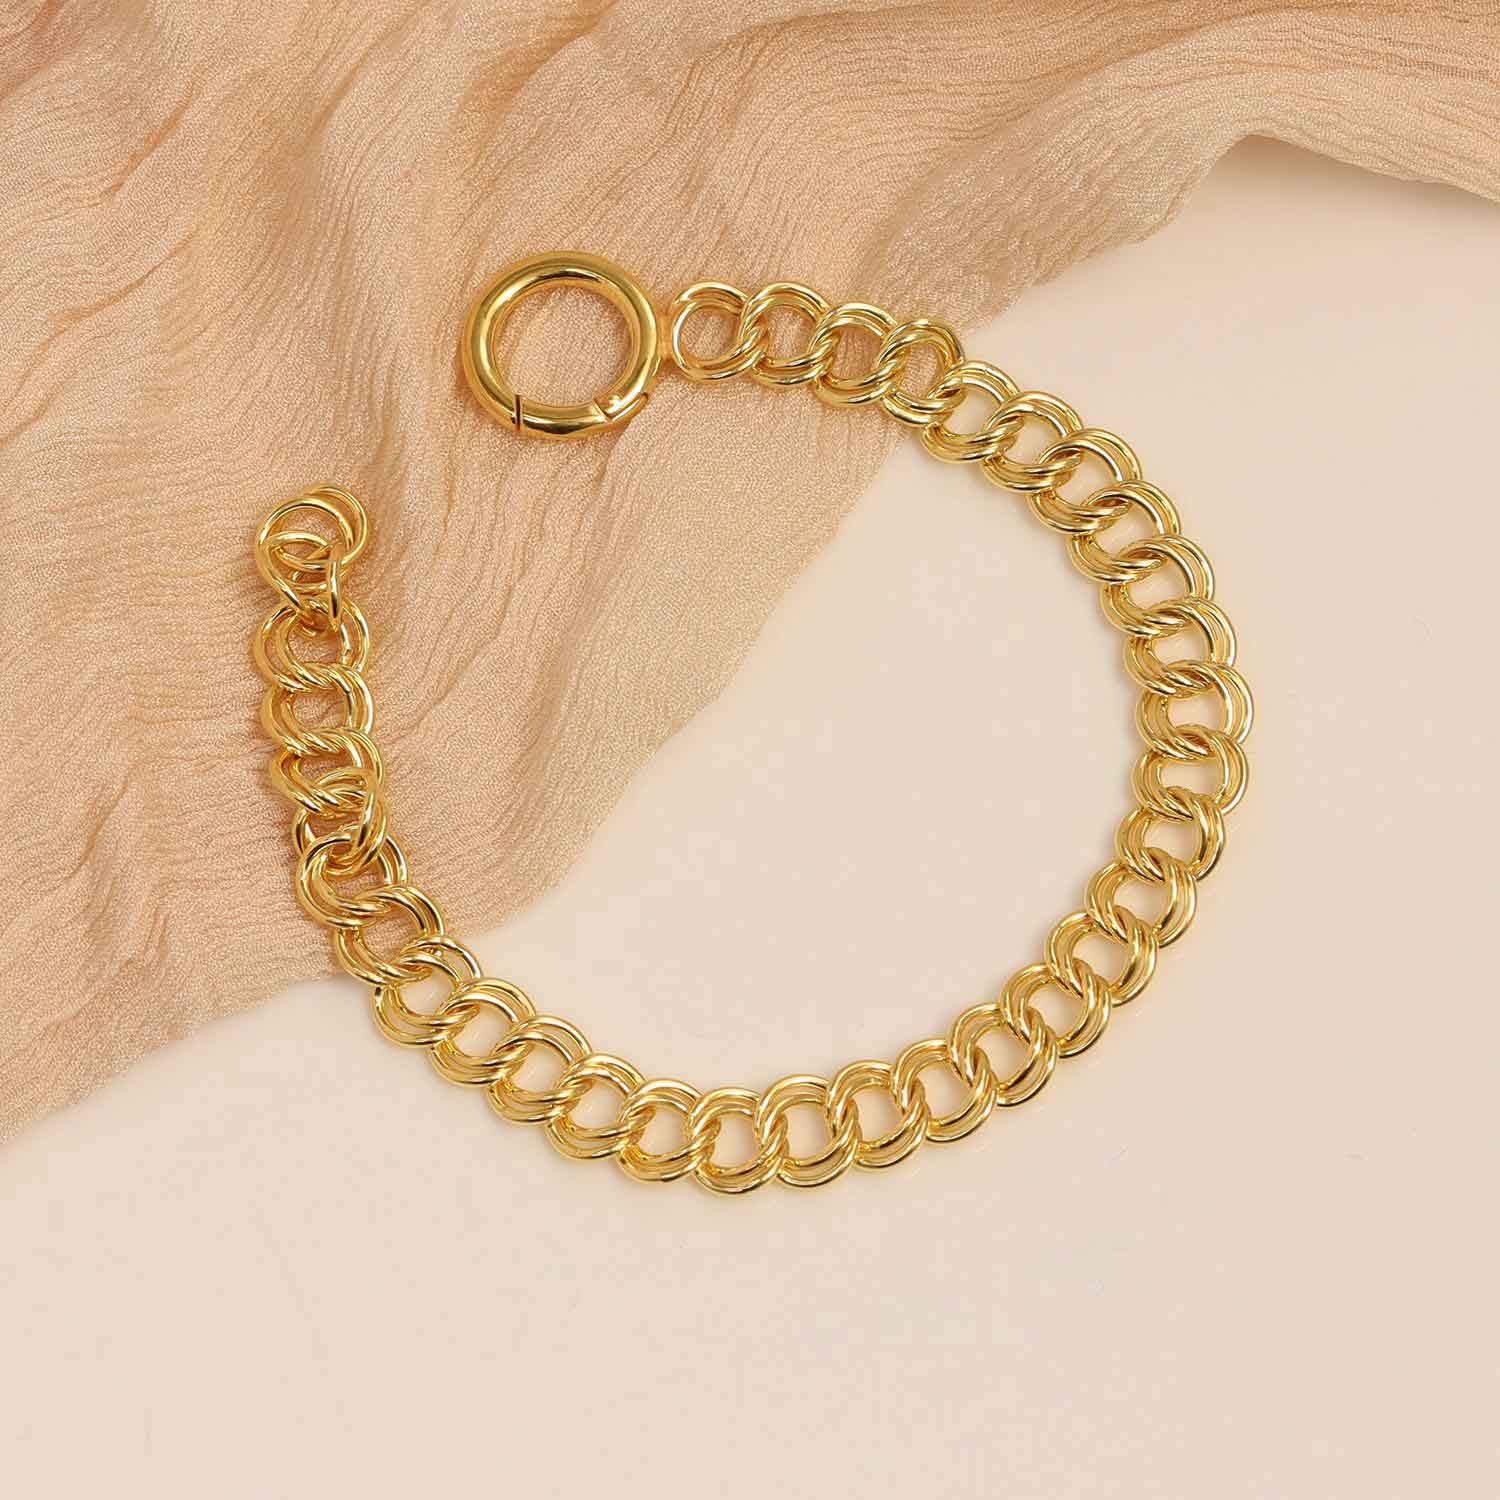 925 Sterling Silver Italian Rolo Curb Chain Bracelet for Women